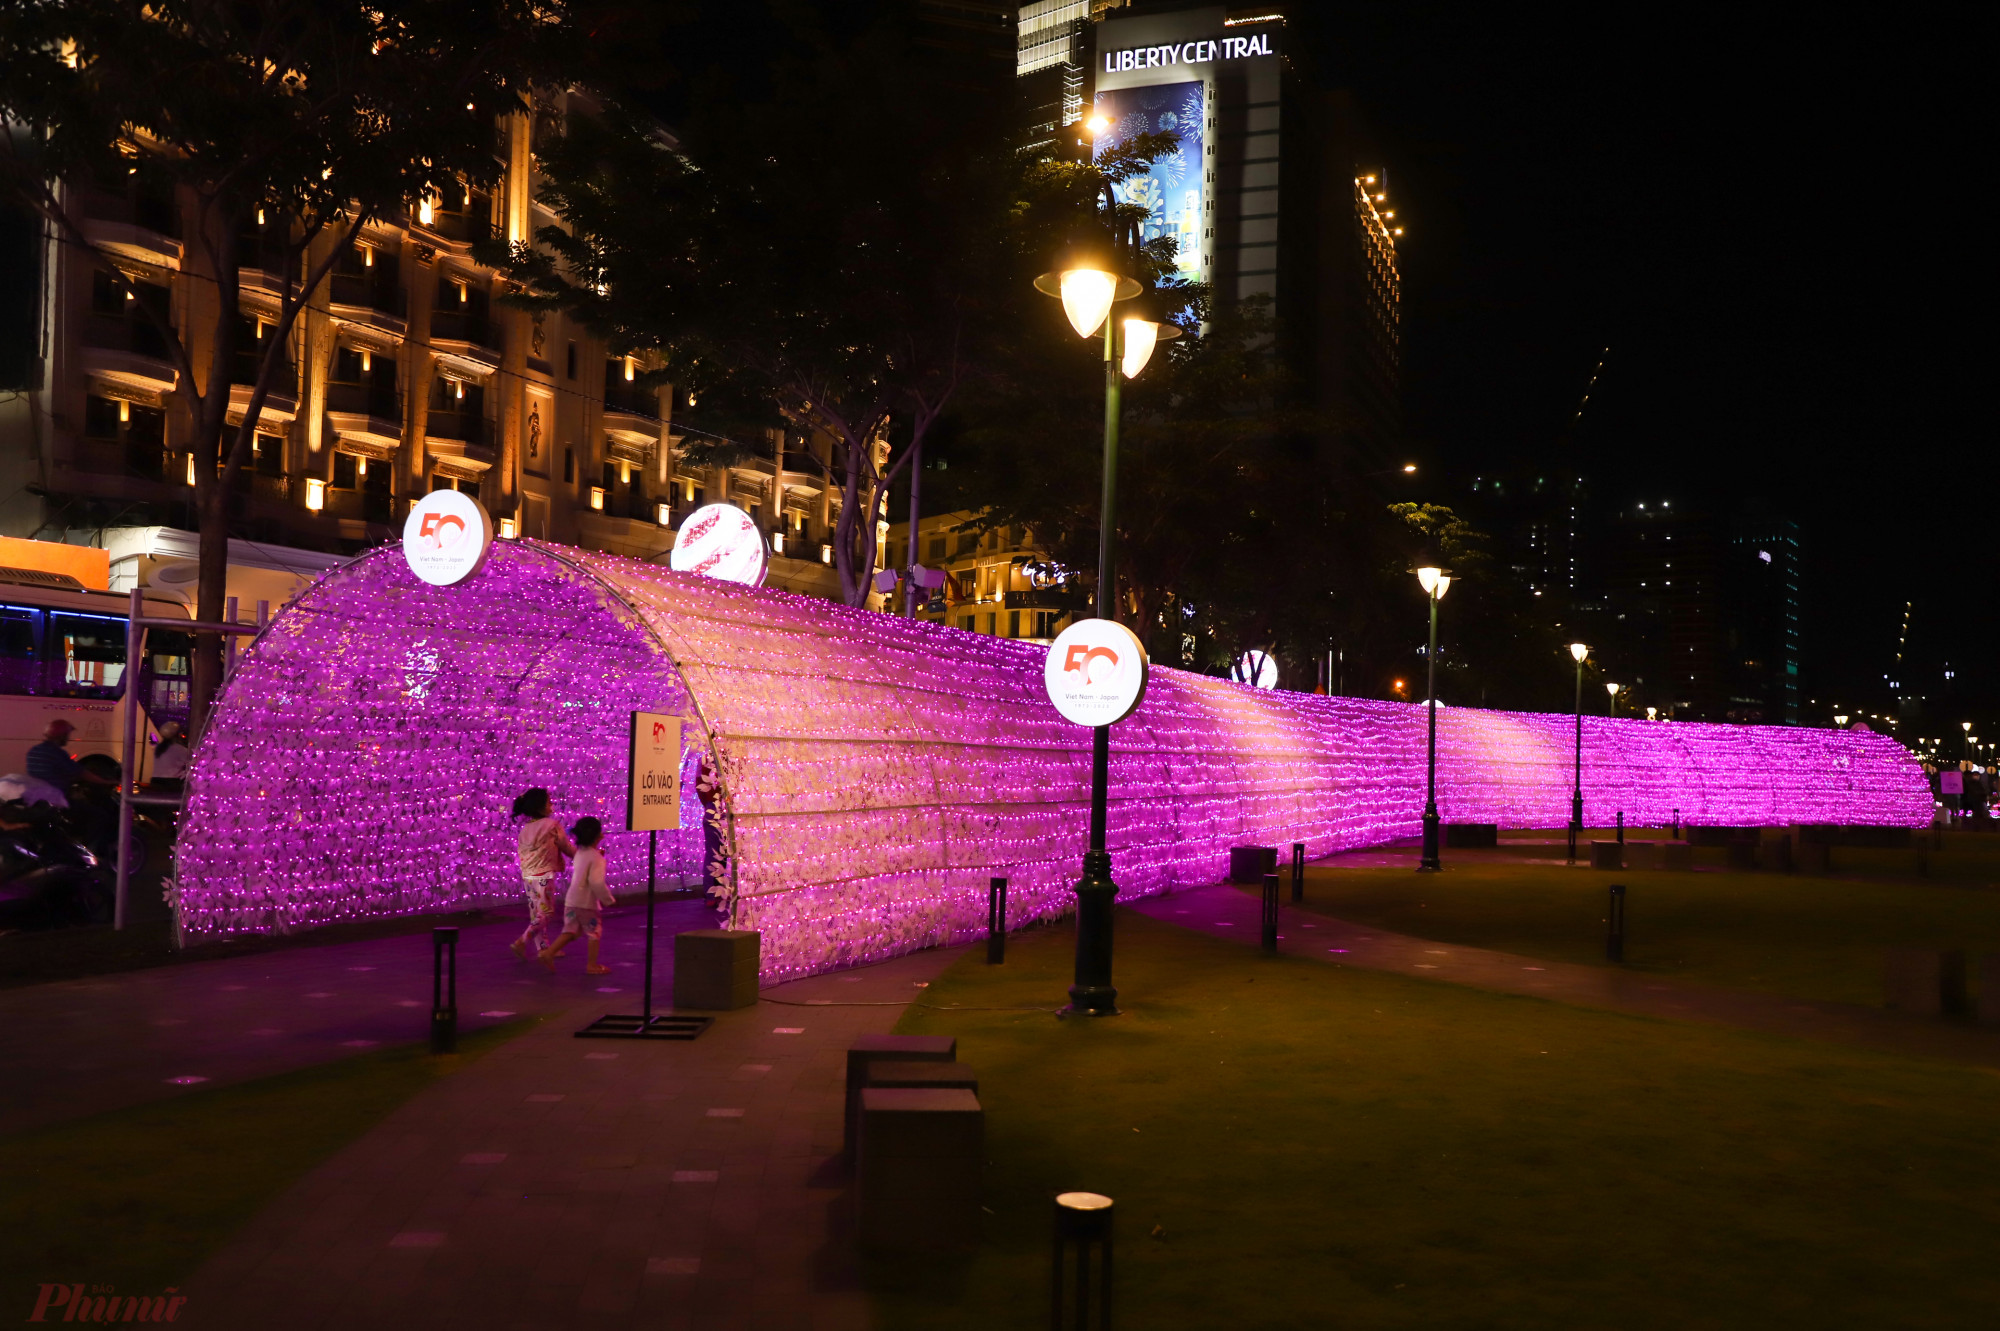 Đường hầm ánh sáng dài 50m, được thiết kế với hàng nghìn chiếc đèn LED tạo không gian bắt mắt ở Công viên bến Bạch Đằng